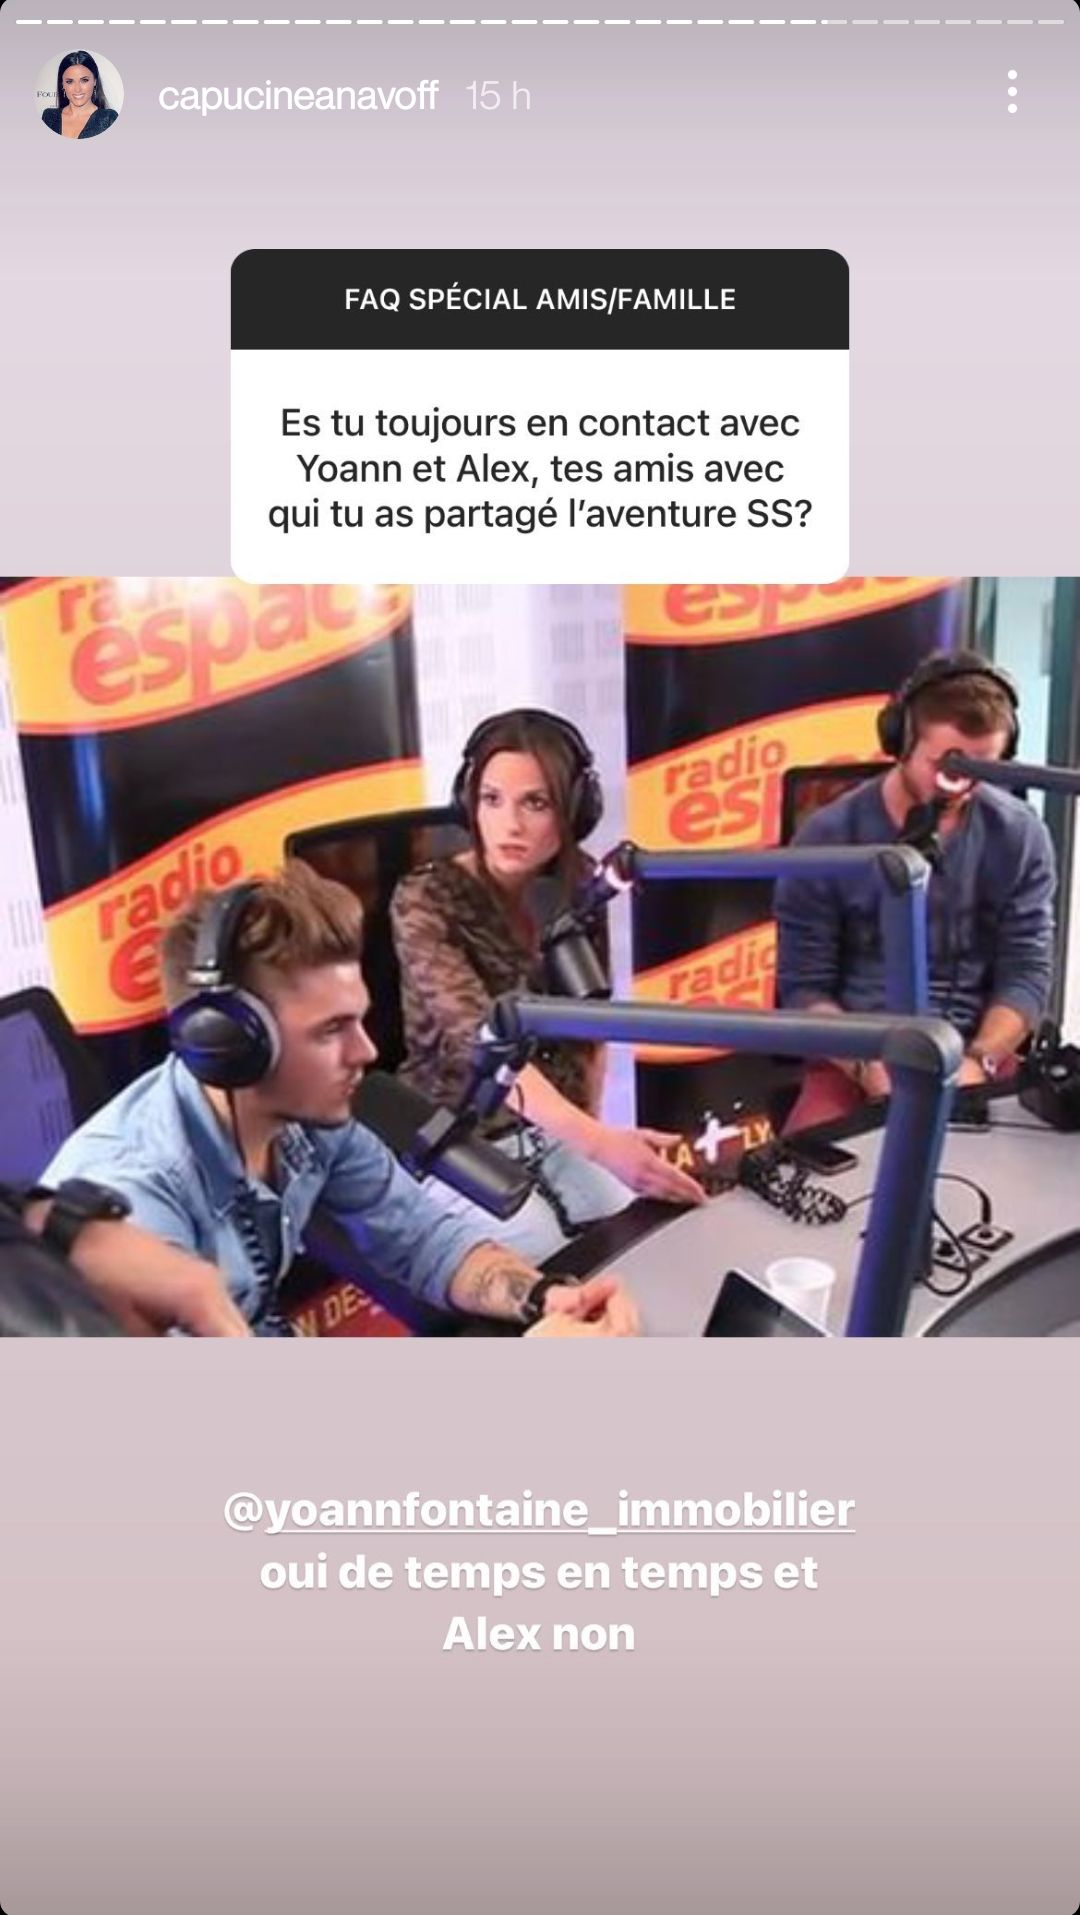  Capucine Anav revoit-t-elle ses ex Yoann et Alexandre ? @Instagram